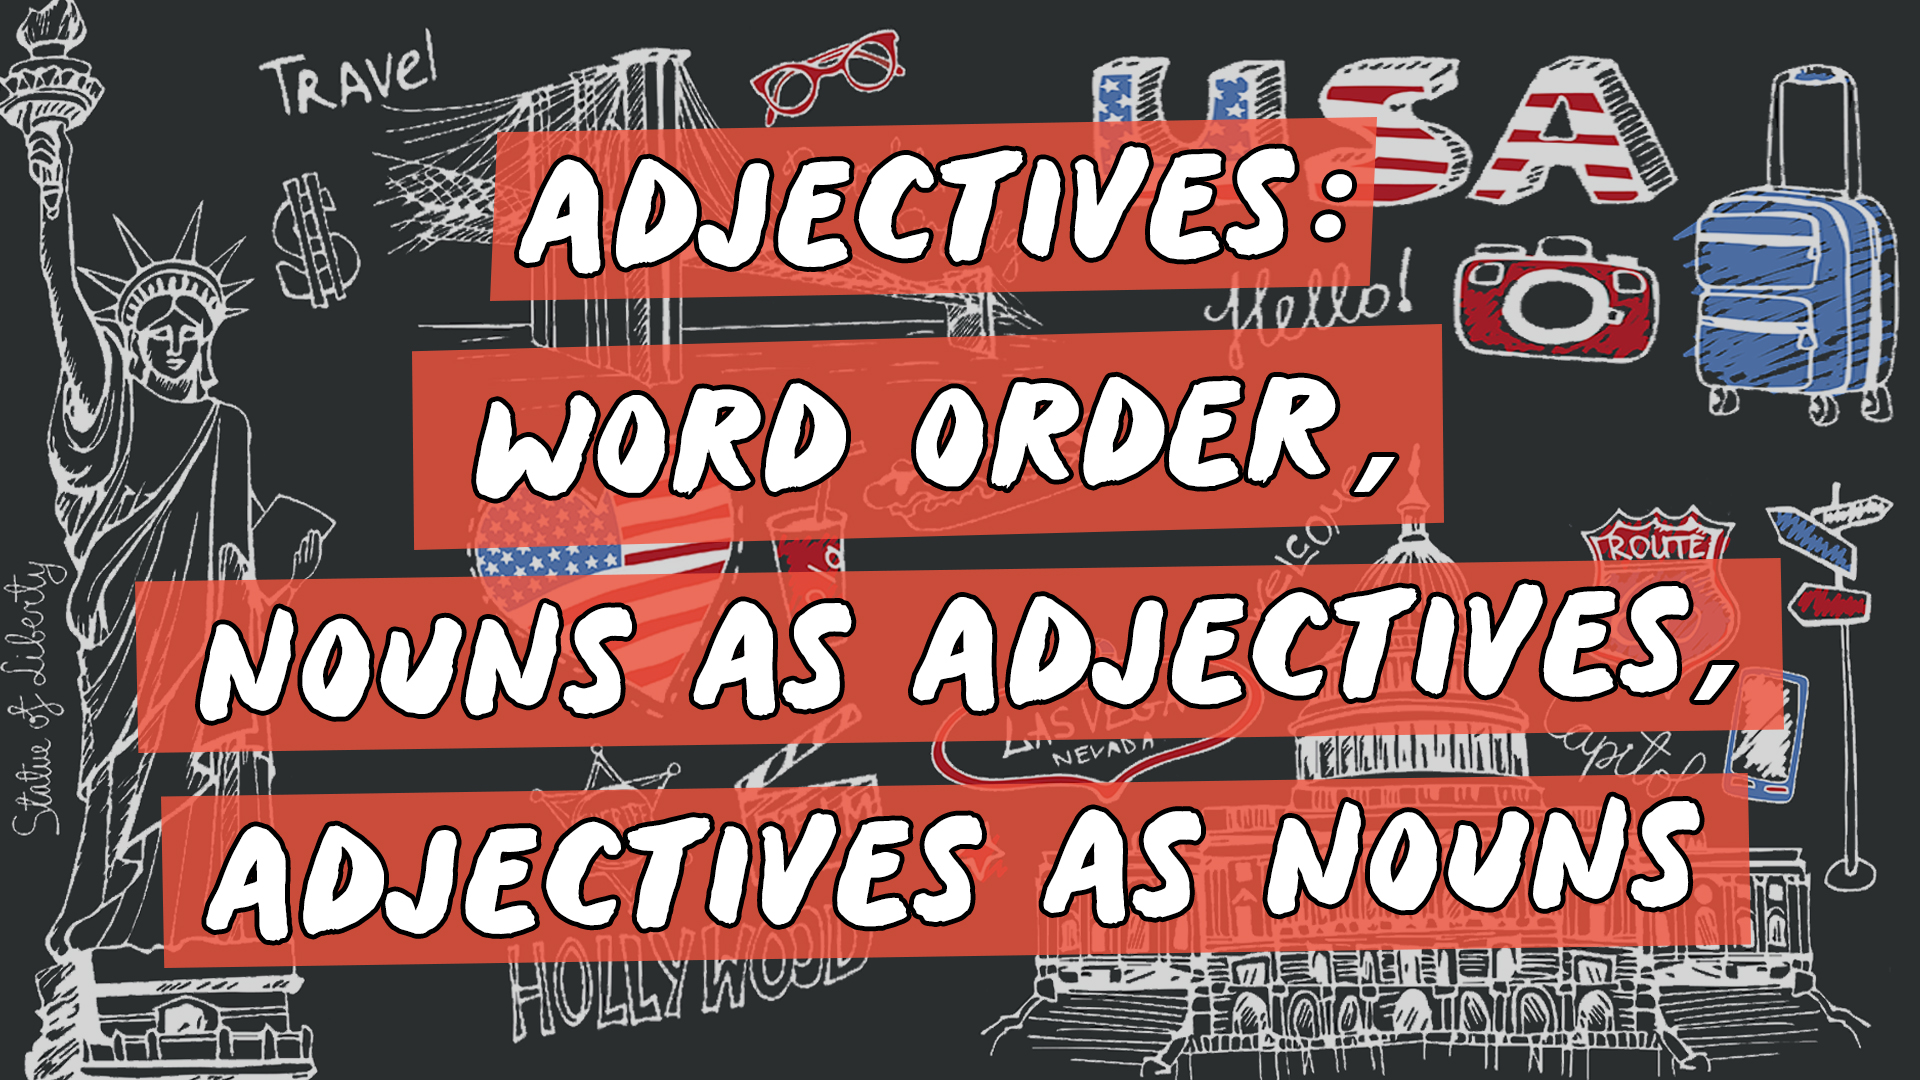 Escrito"Adjectives: Word Order, Nouns as Adjectives, Adjectives as Nouns" sobre representação de vários elementos da cultura do inglês americano.